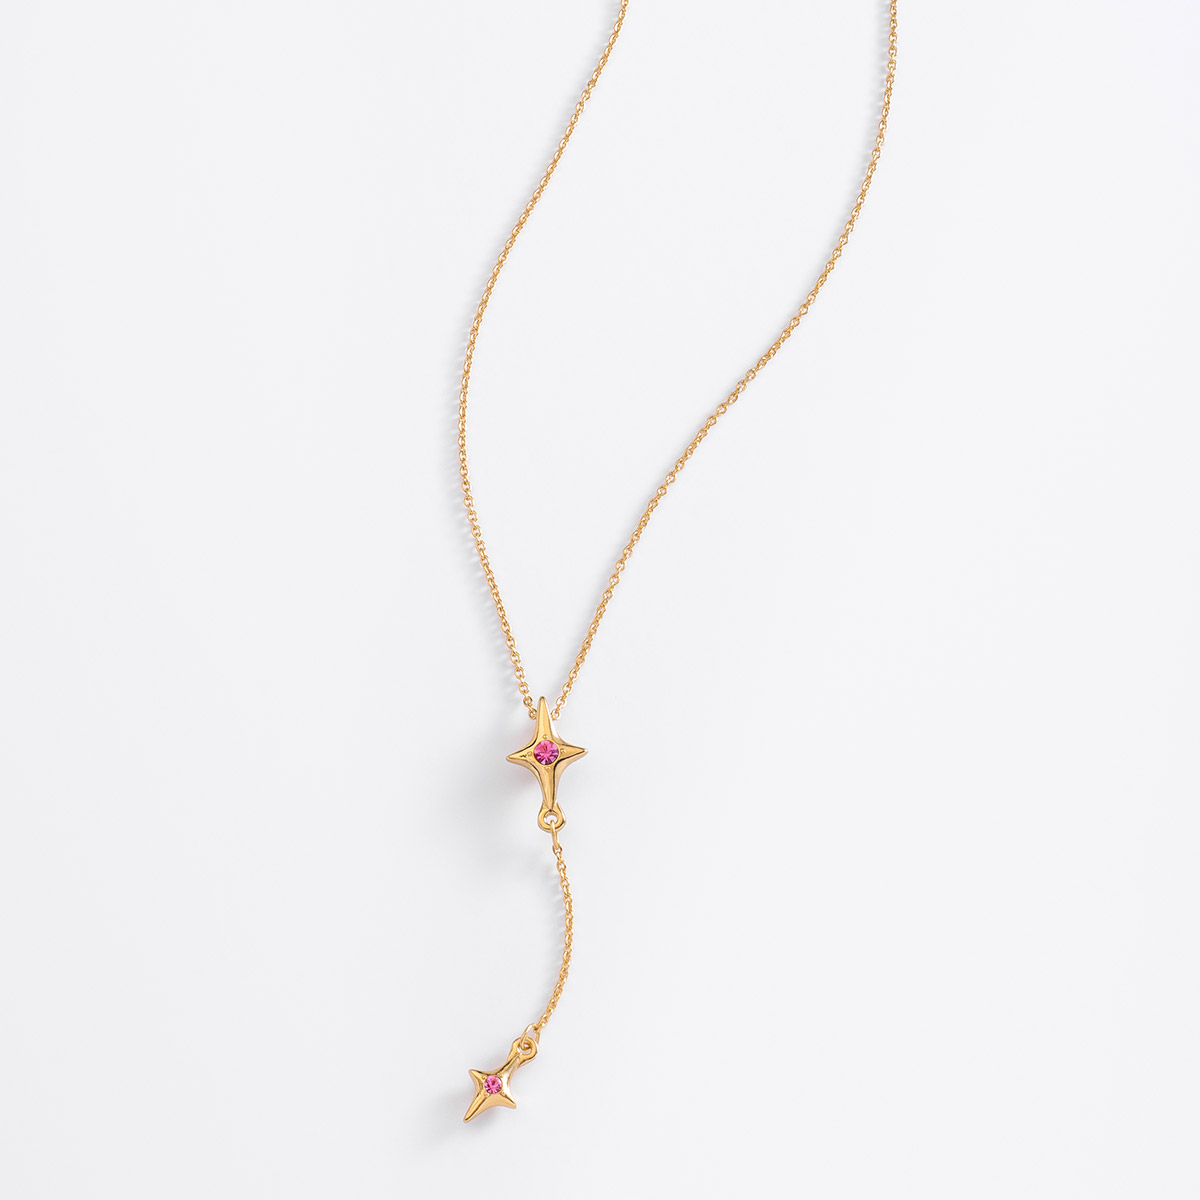 Collar de 42 cm + 10 cm de ext, en baño de oro, con piedras en tono rosa.